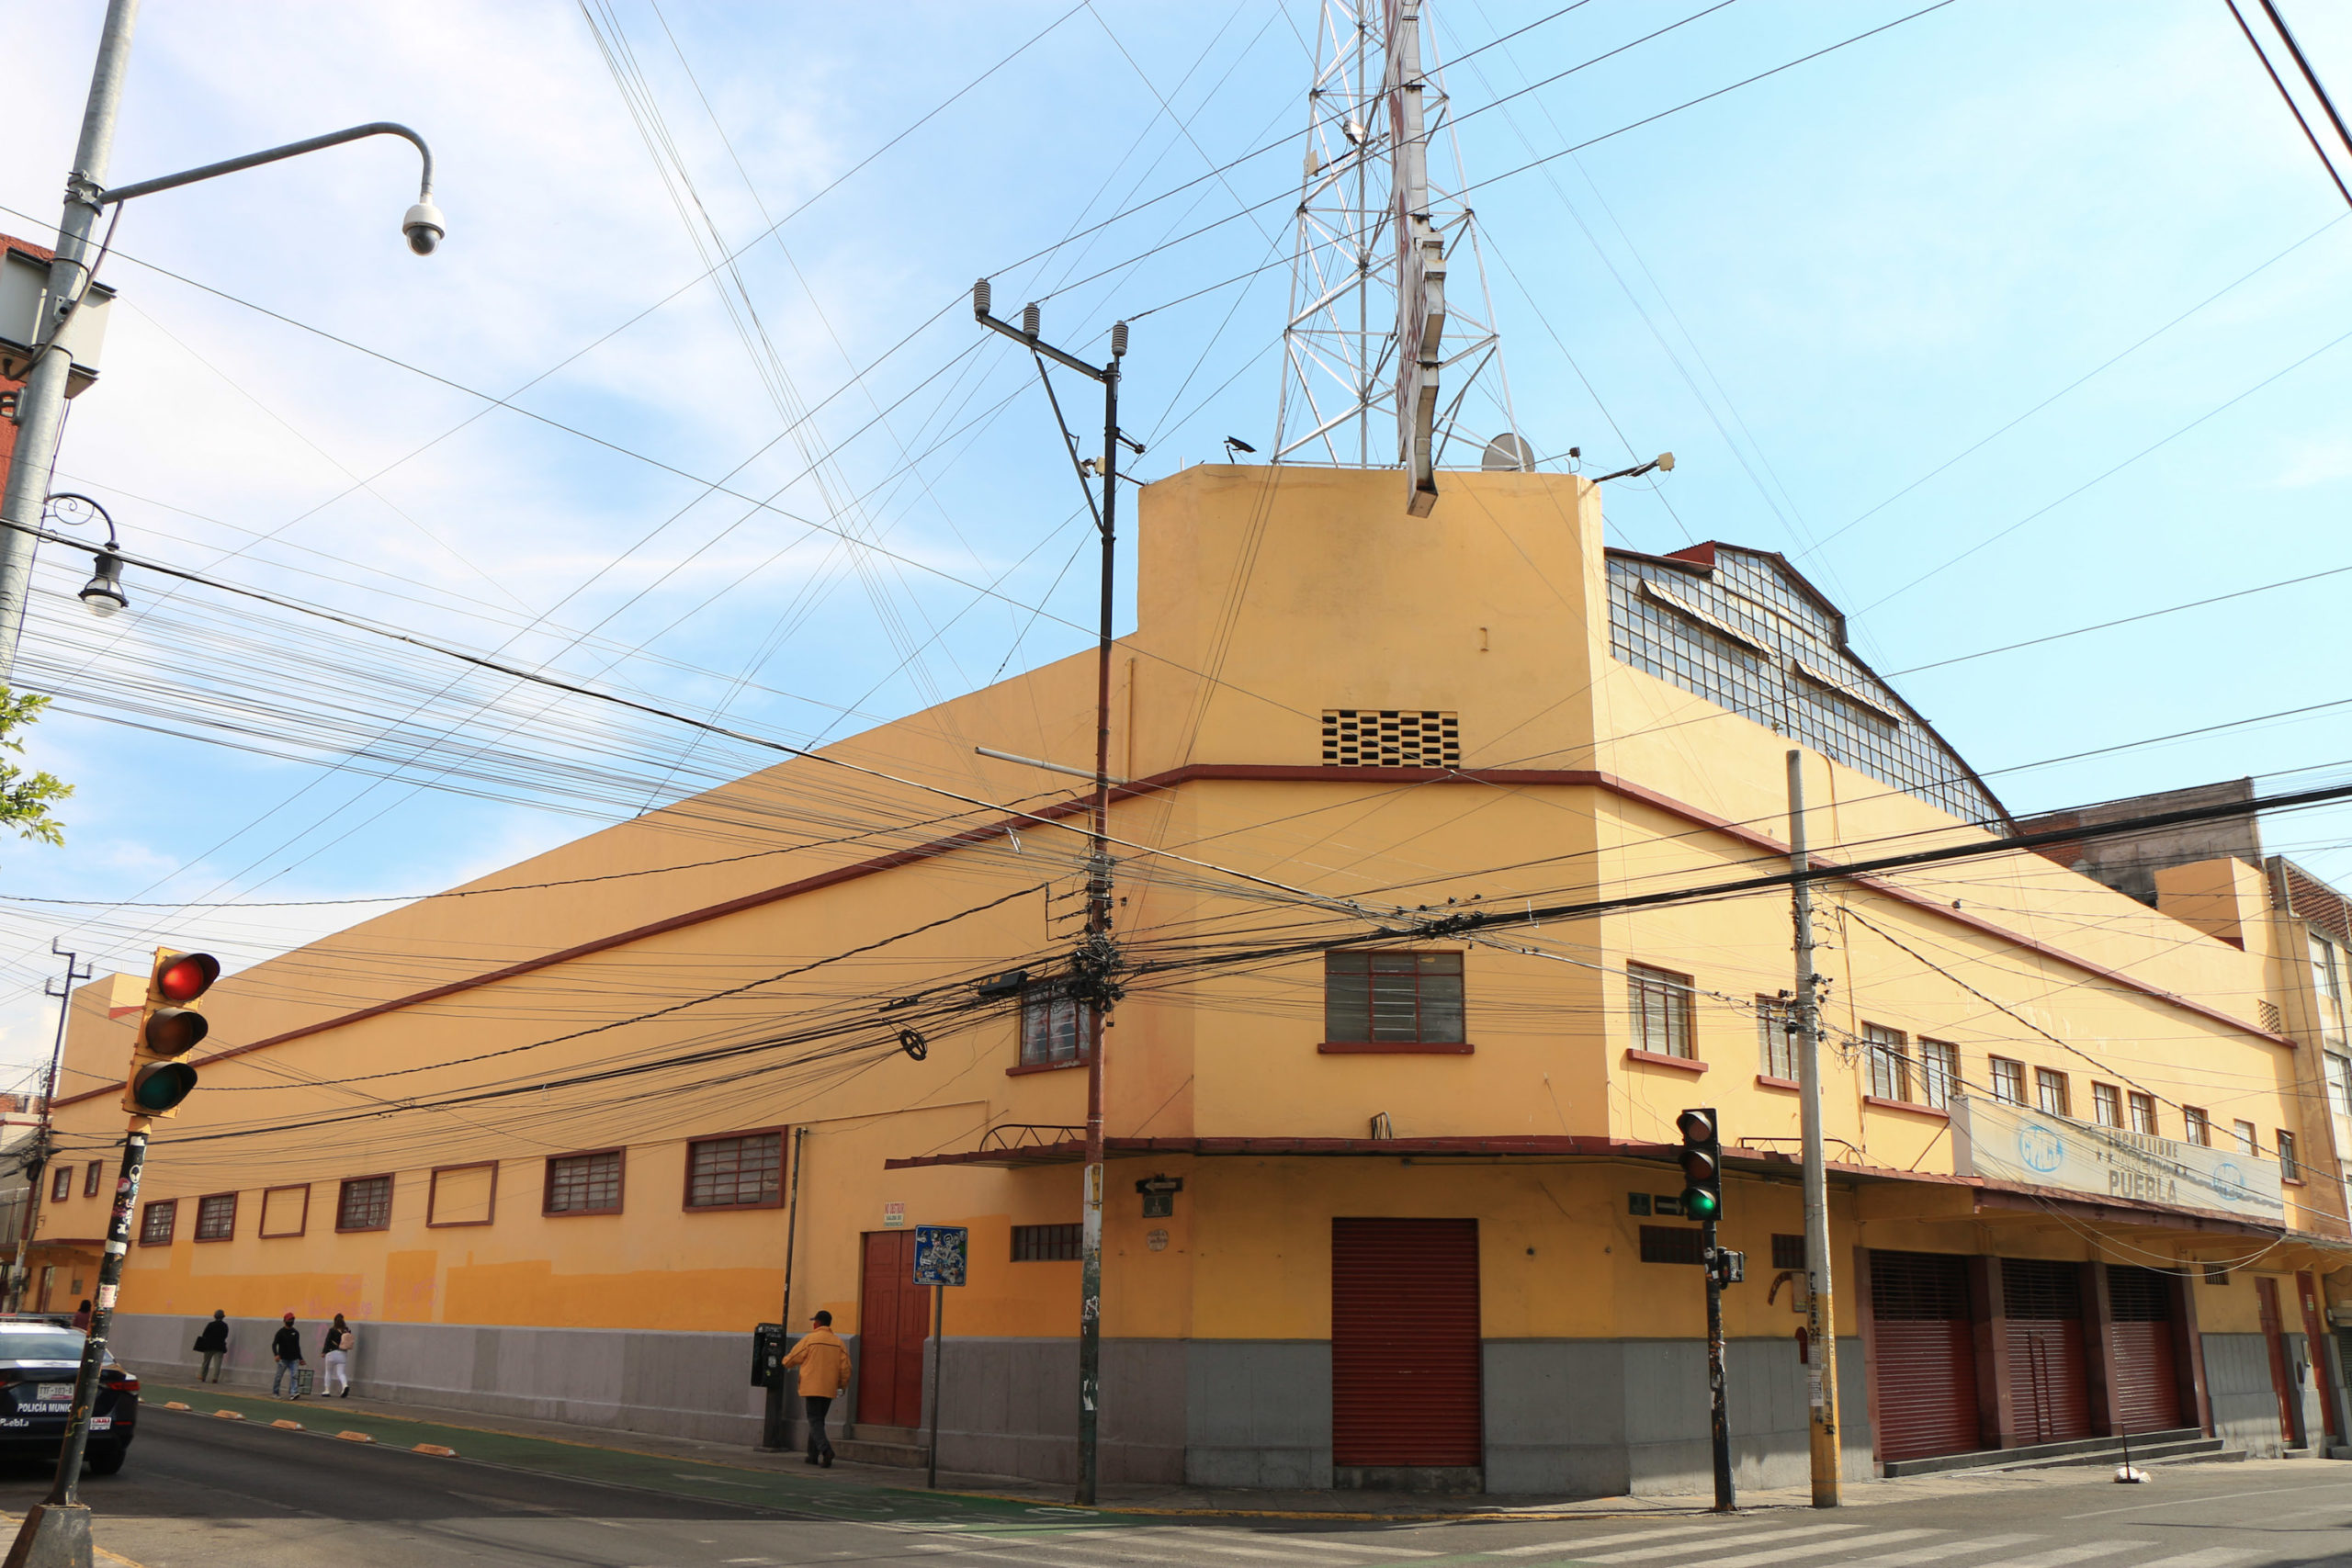 Arena Puebla